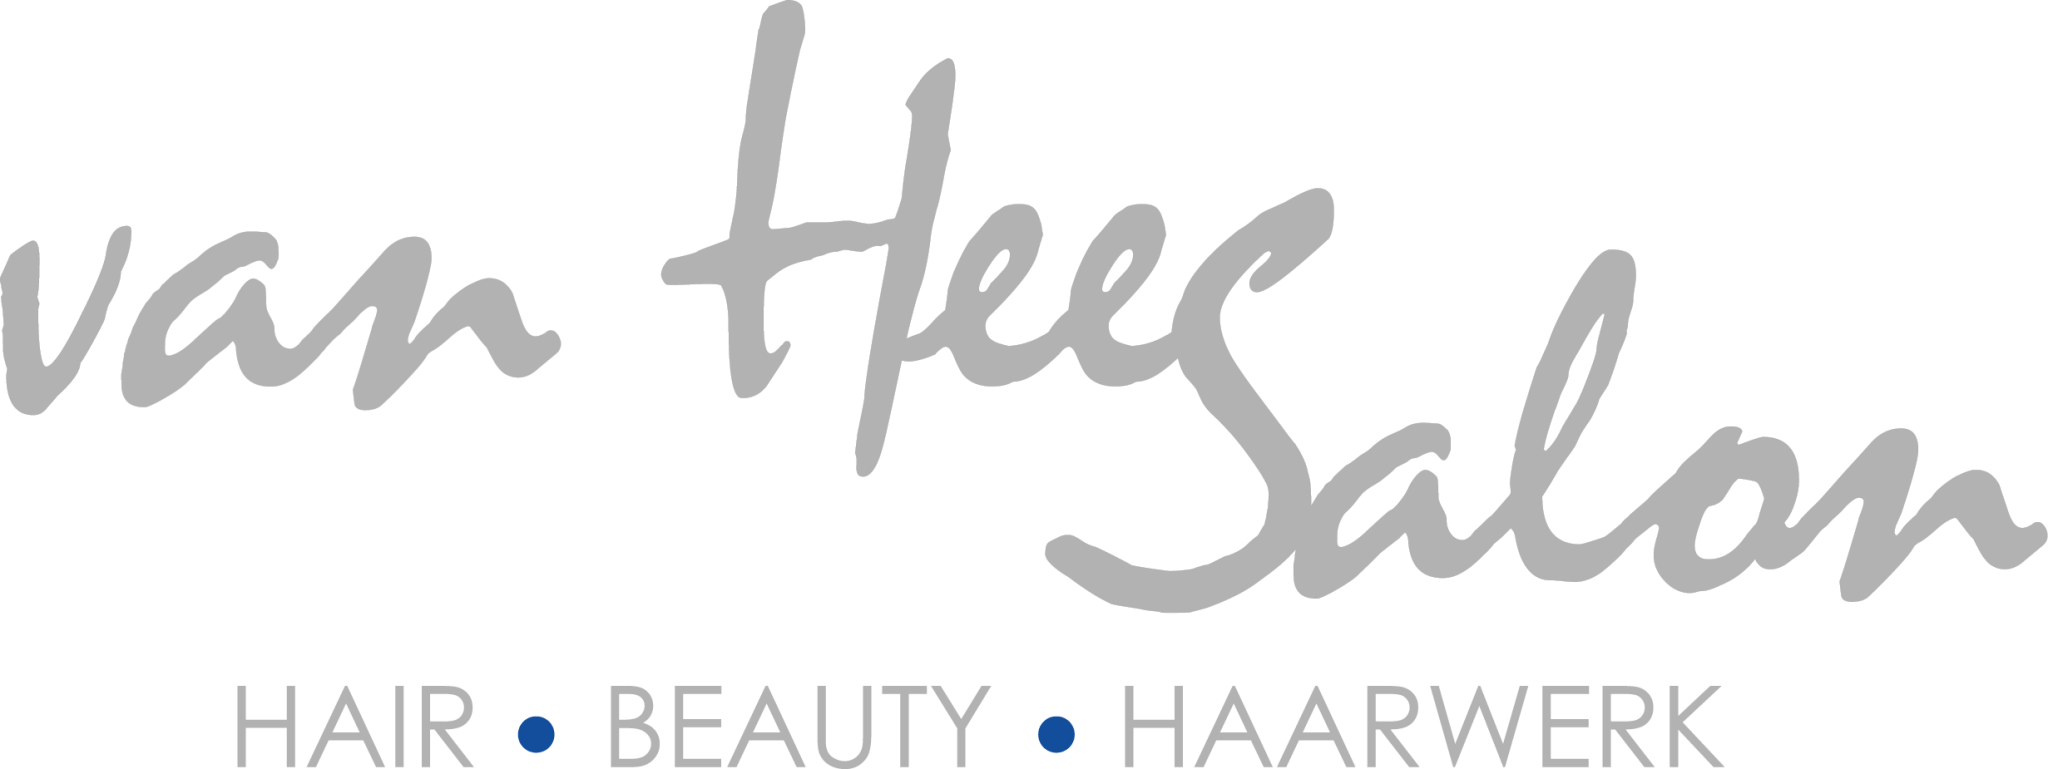 Logo Van Heessalon